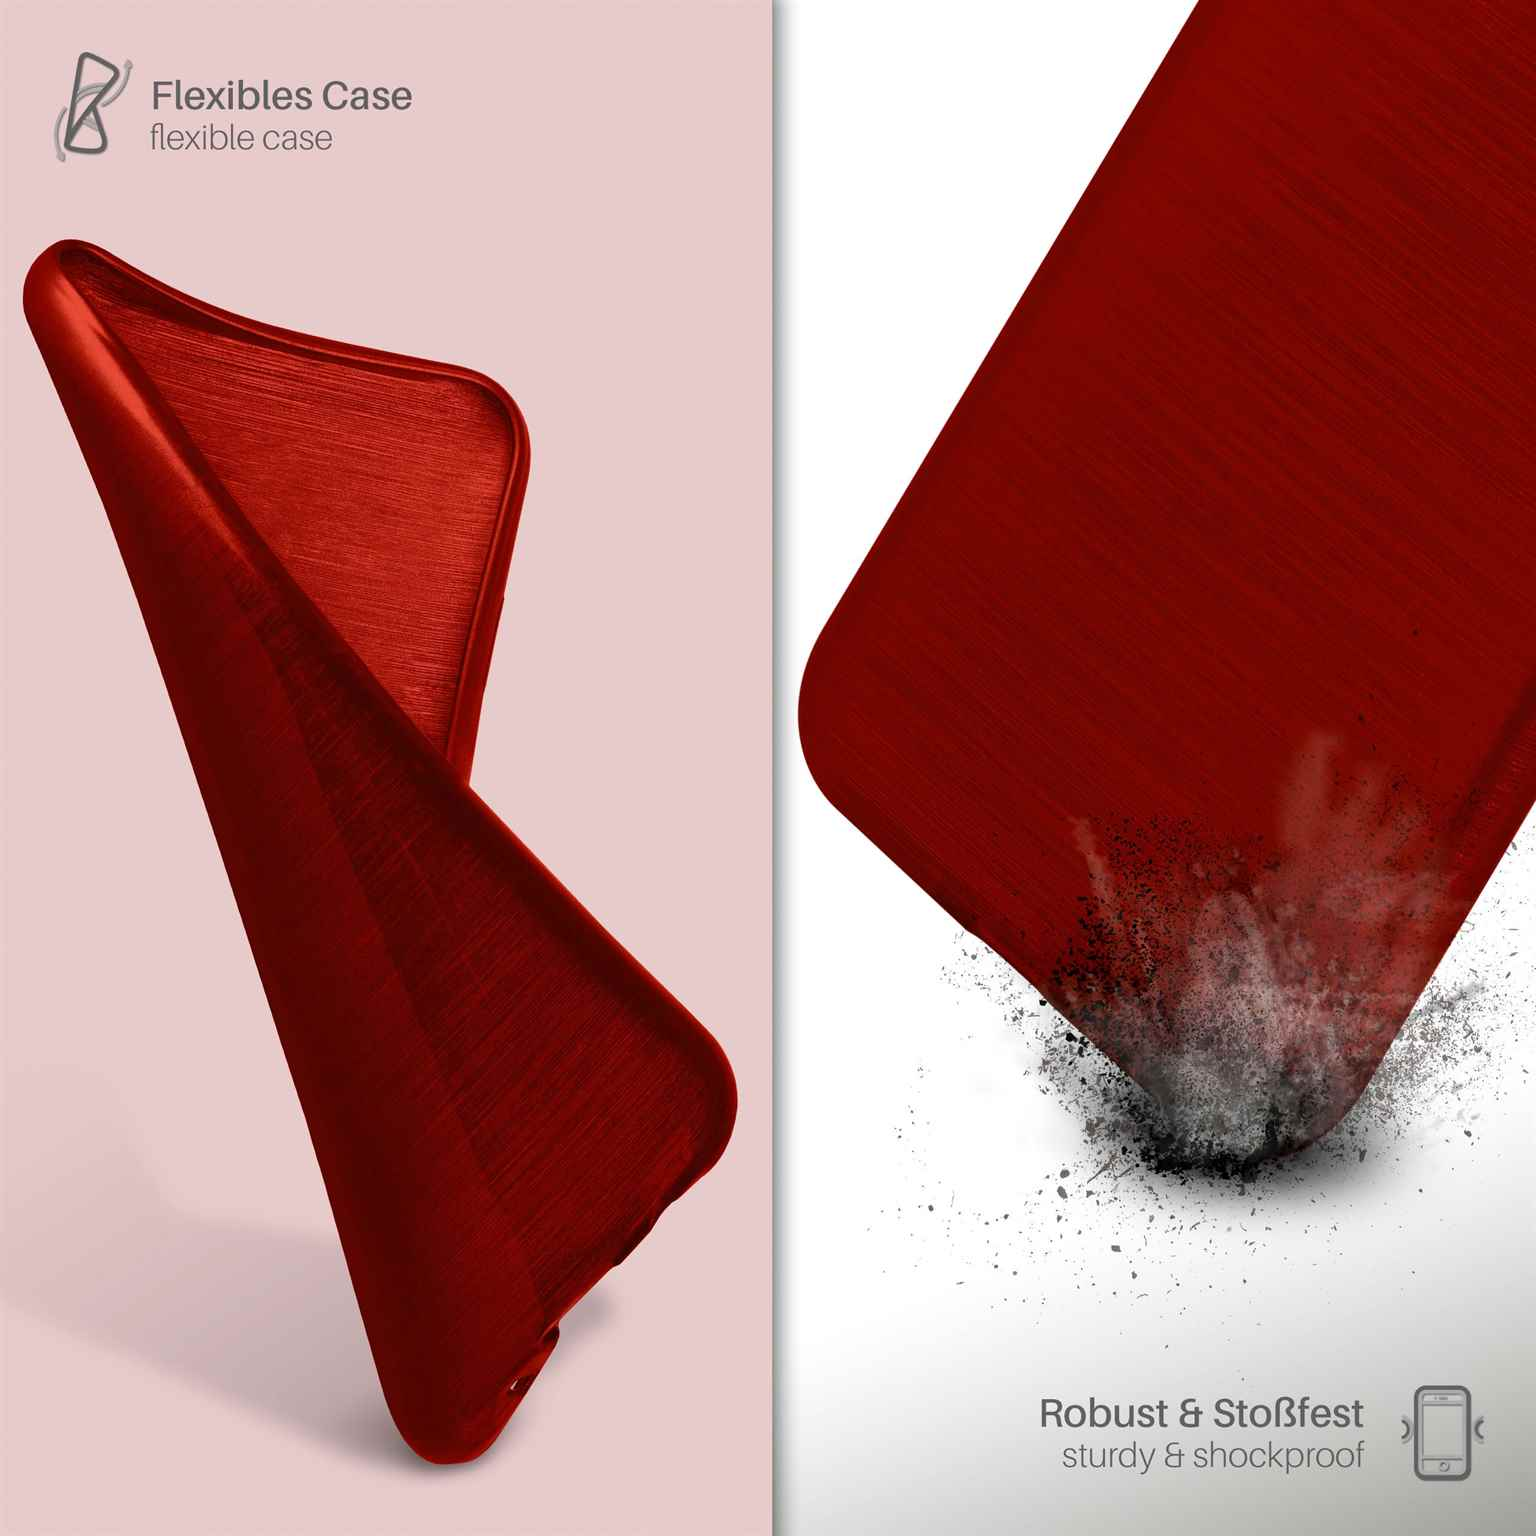 MOEX Brushed Case, Backcover, LG, Crimson-Red L65